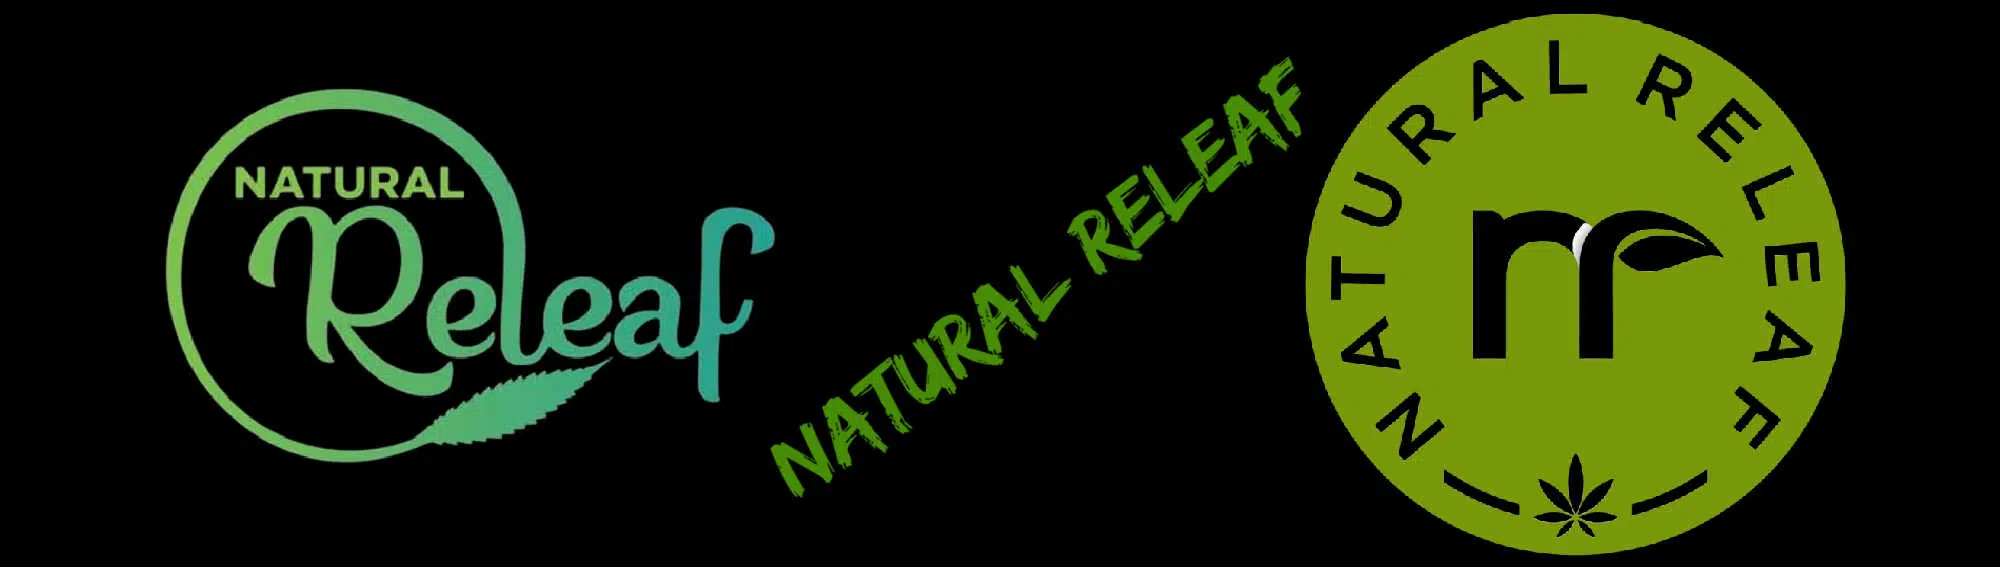 image of natural releaf logo